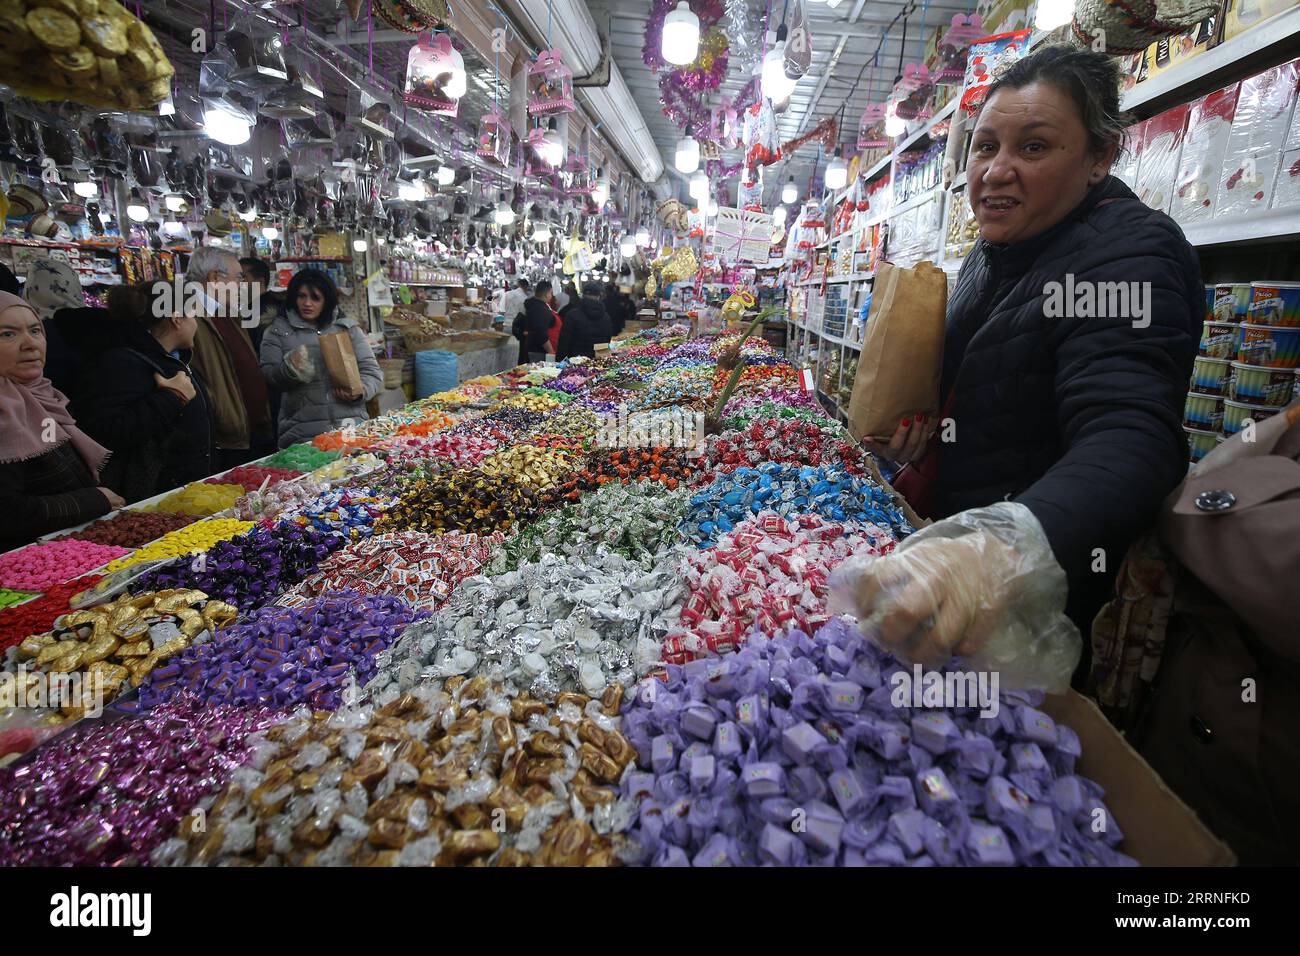 230109 -- BLIDA ALGÉRIE, 9 janvier 2023 -- les gens achètent des bonbons avant le nouvel an amazigh sur un marché de Blida, Algérie, le 9 janvier 2023. Imazighen en Algérie fêtera son nouvel an le 12 janvier. ALGÉRIE-BLIDA-AMAZIGH NOUVEL AN-MARCHÉ WUXTIANYU PUBLICATIONXNOTXINXCHN Banque D'Images